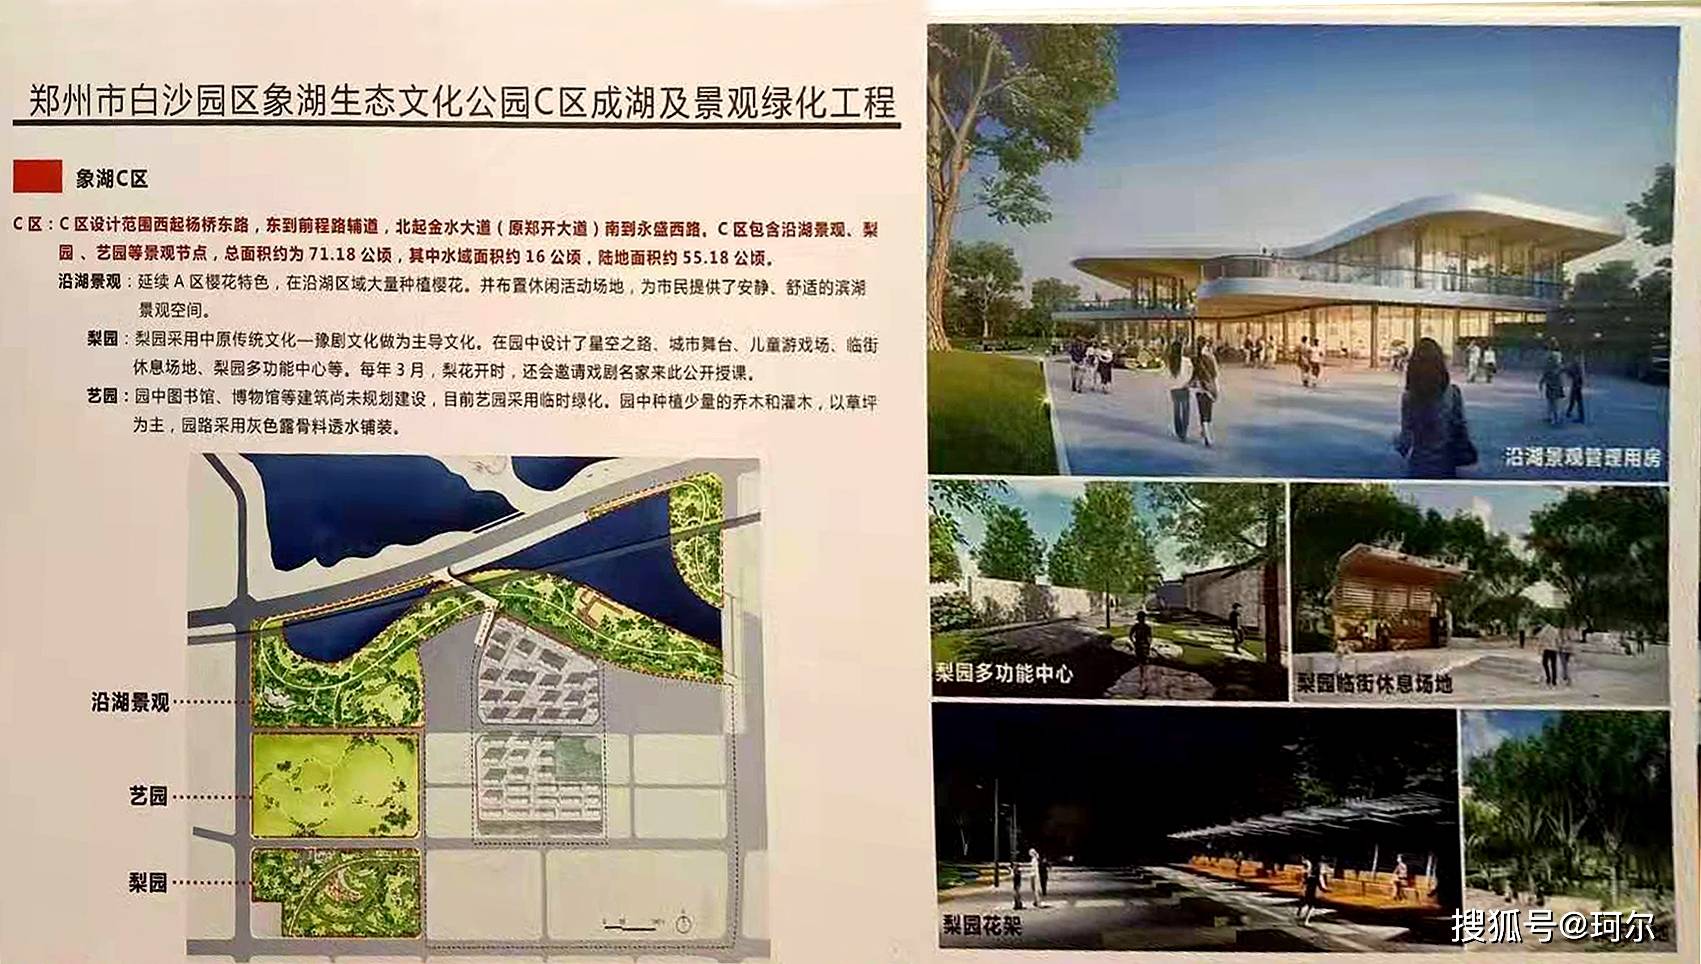 郑东象湖生态文化公园C区成湖及景观绿化来了，图书馆和博物馆还会远吗？